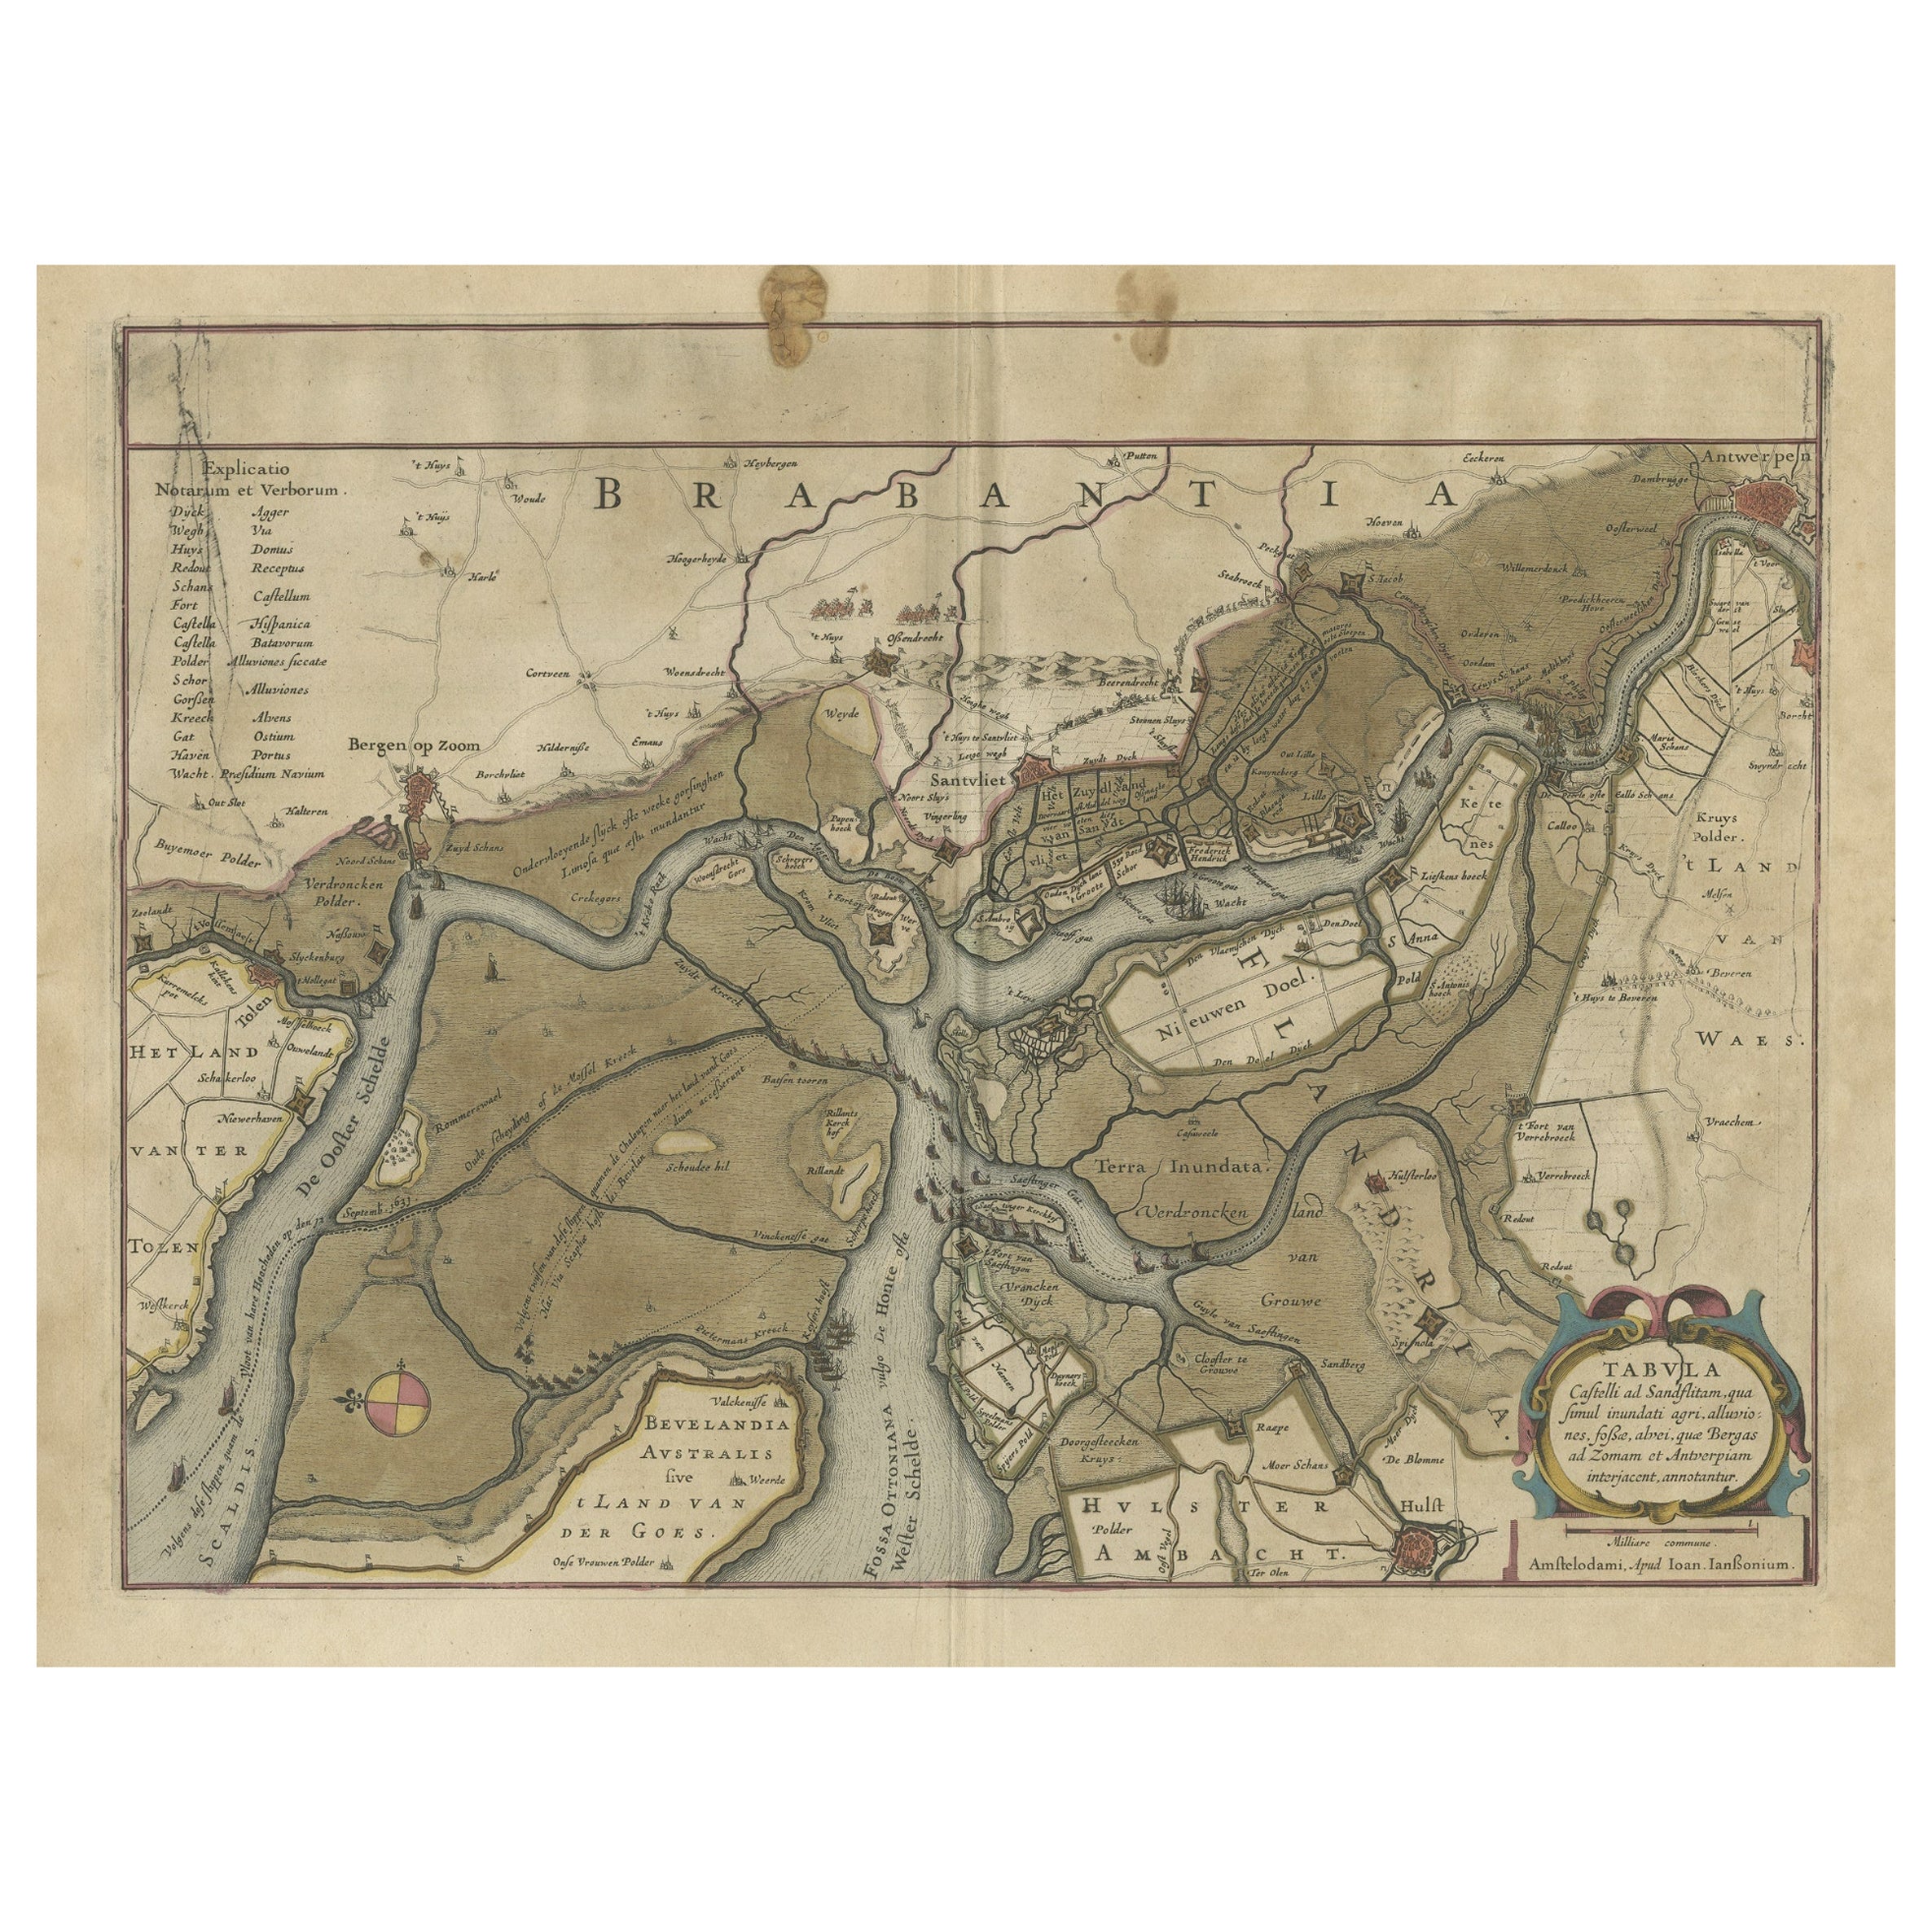 Antike Karte der Region zwischen Bergen op Zoom, Sandvliet, Hulst und Antwerpen